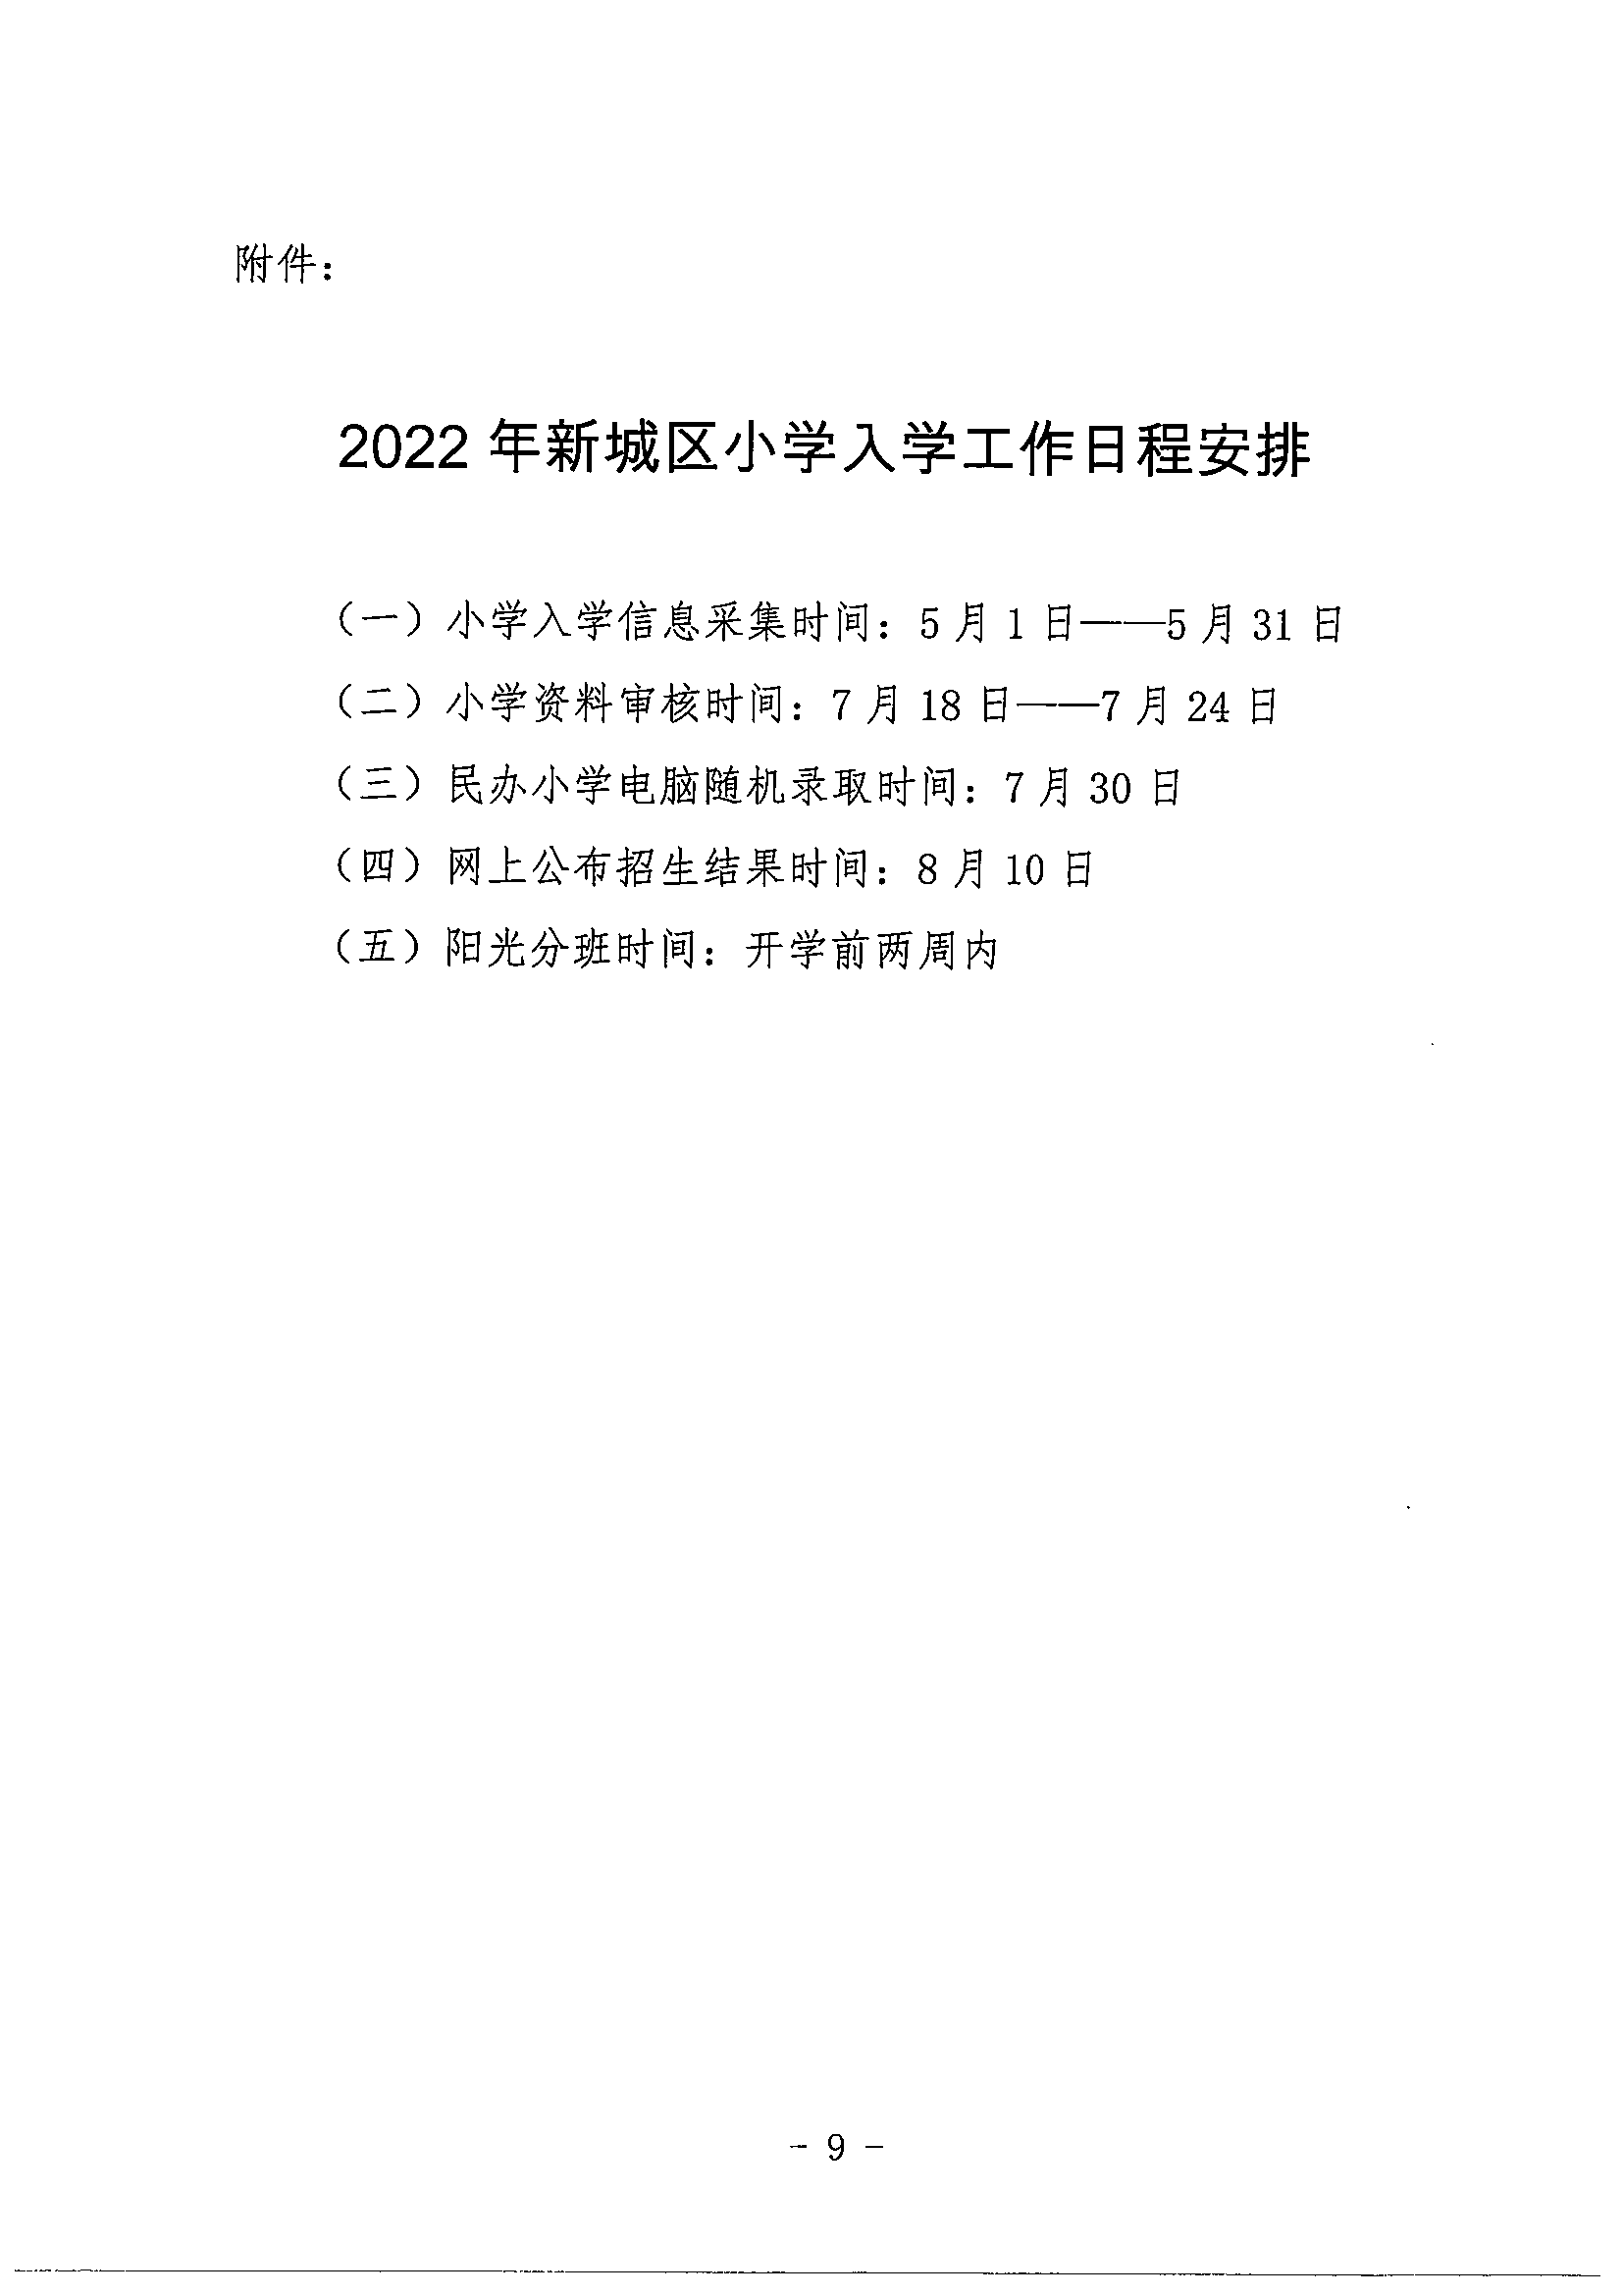 新城区教育局关于2022年小学入学招生工作实施方案_08.png